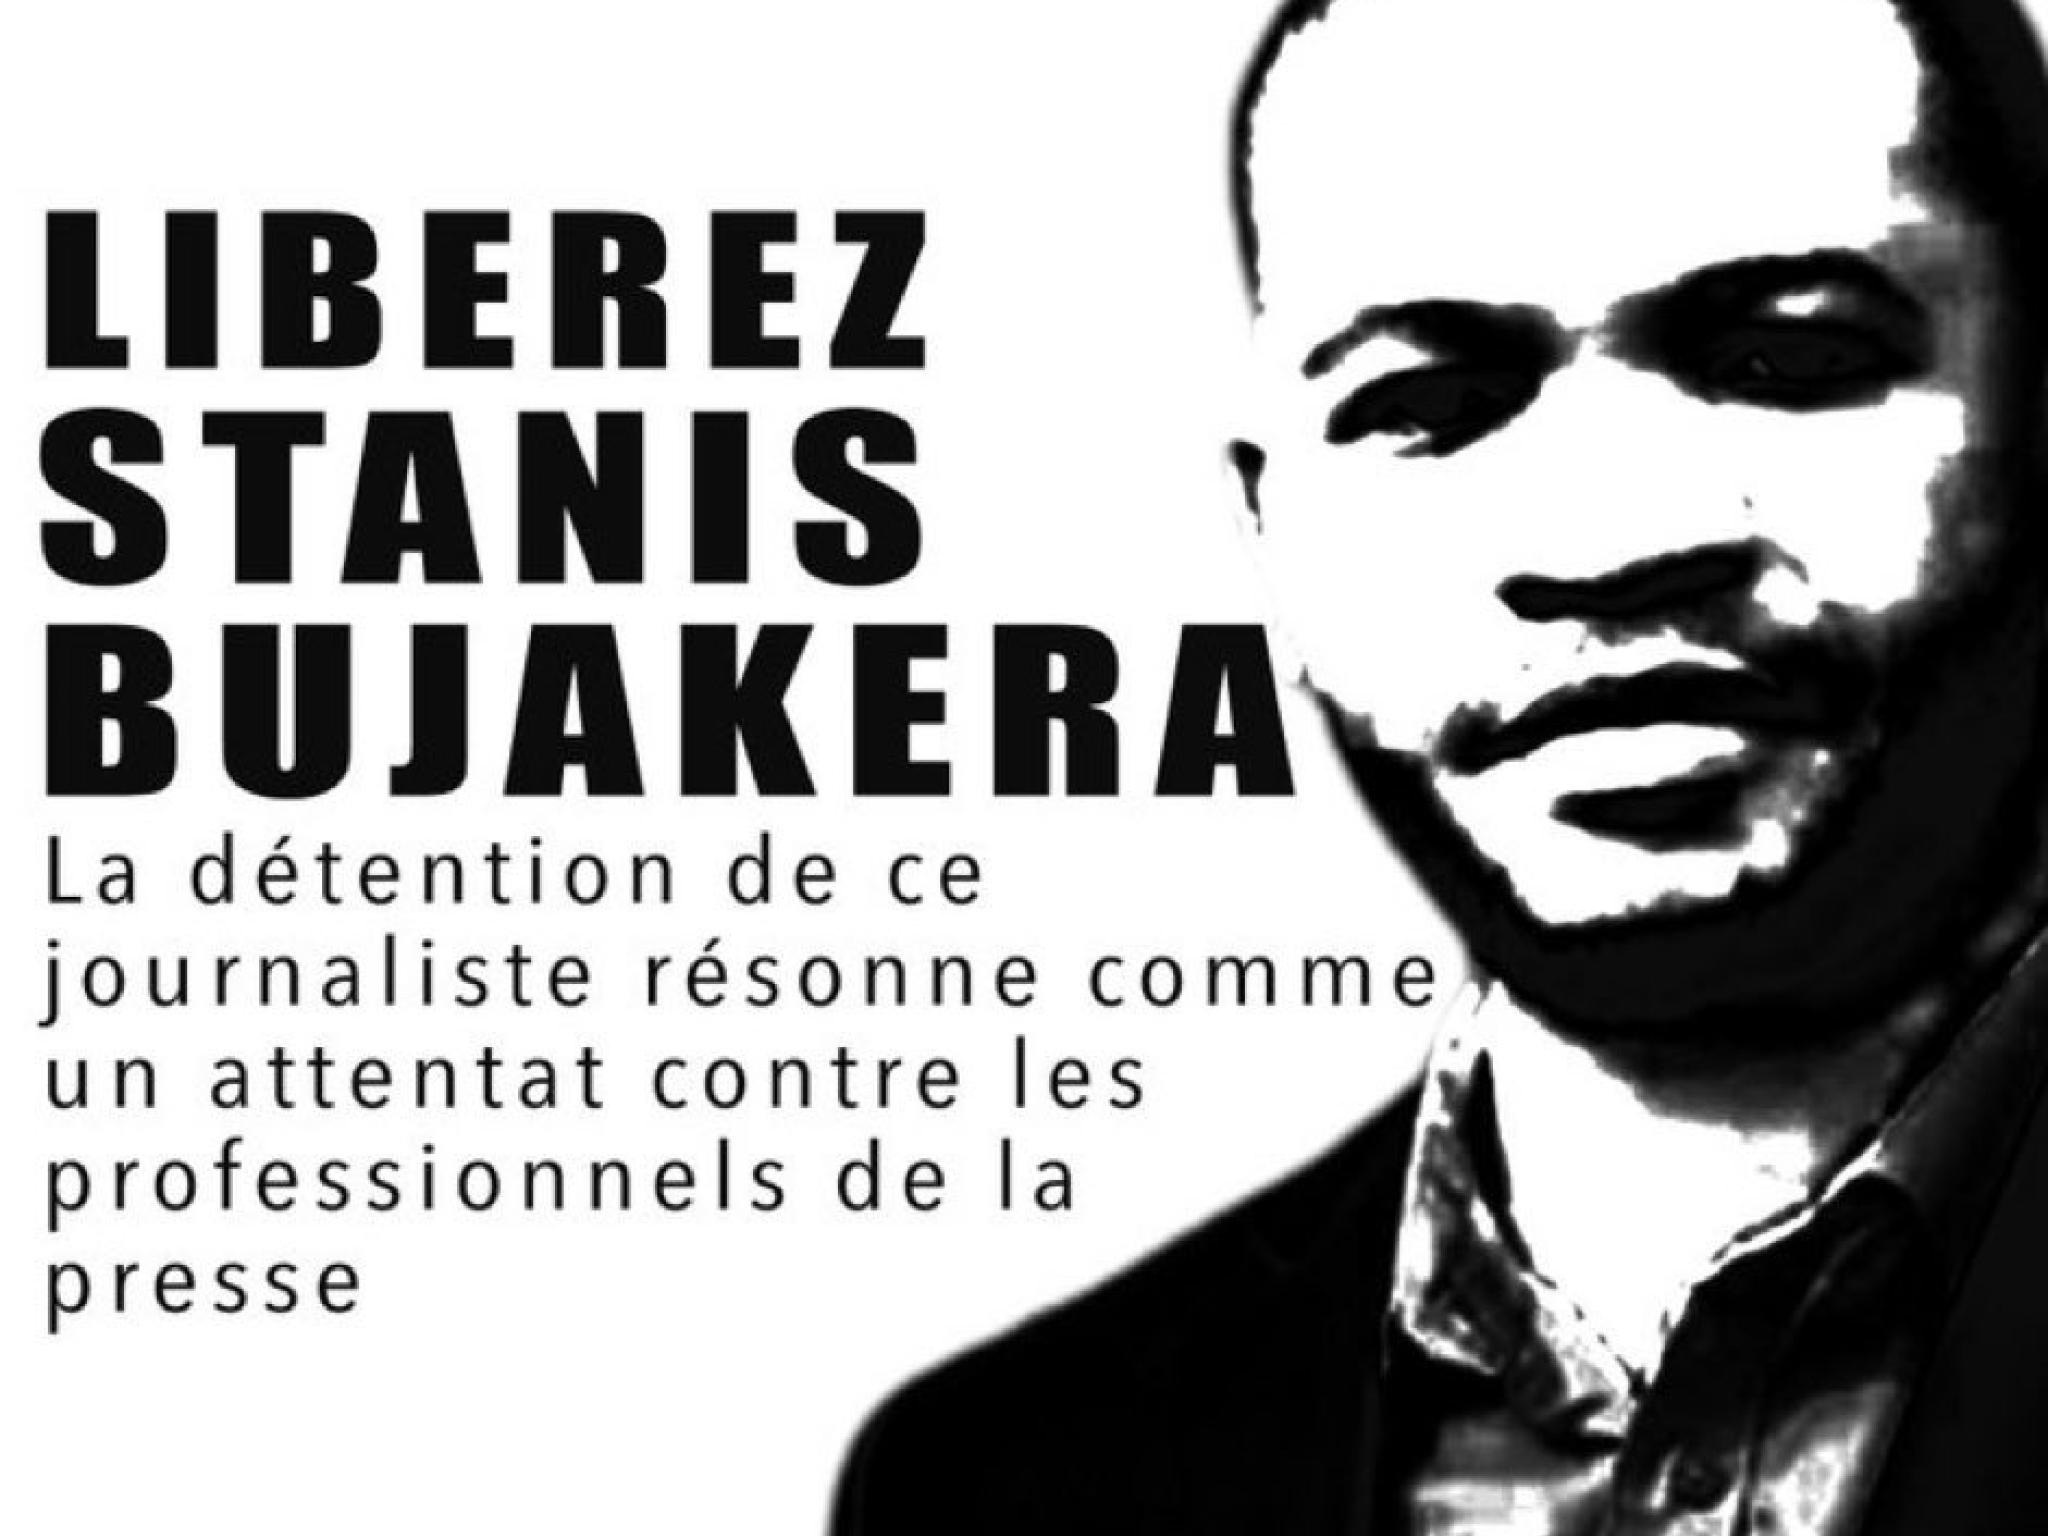 Stanis Bujakera, rédacteur en chef adjoint d'actualite.cd et correspondant de Jeune Afrique.